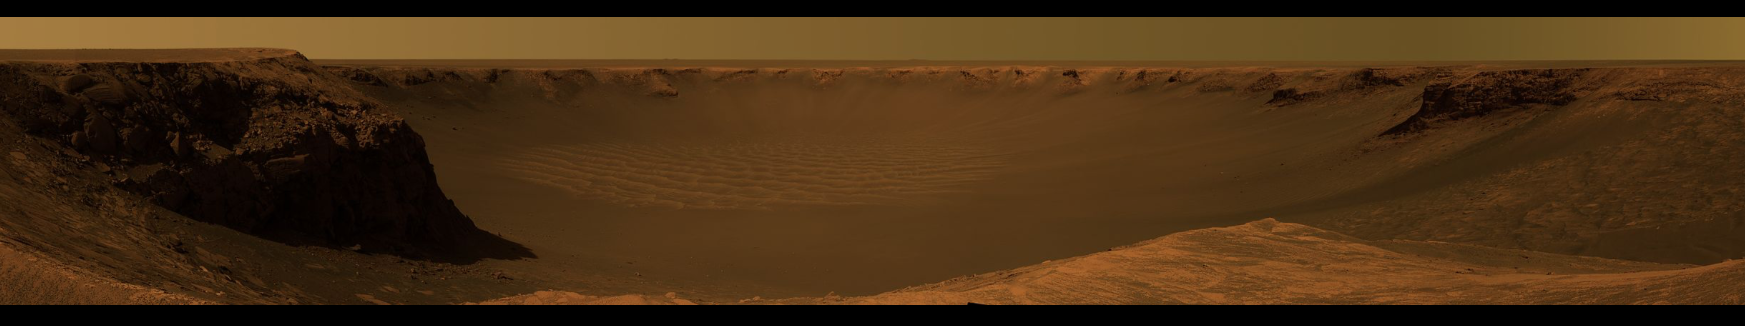 Marte. Cráter Victoria.png